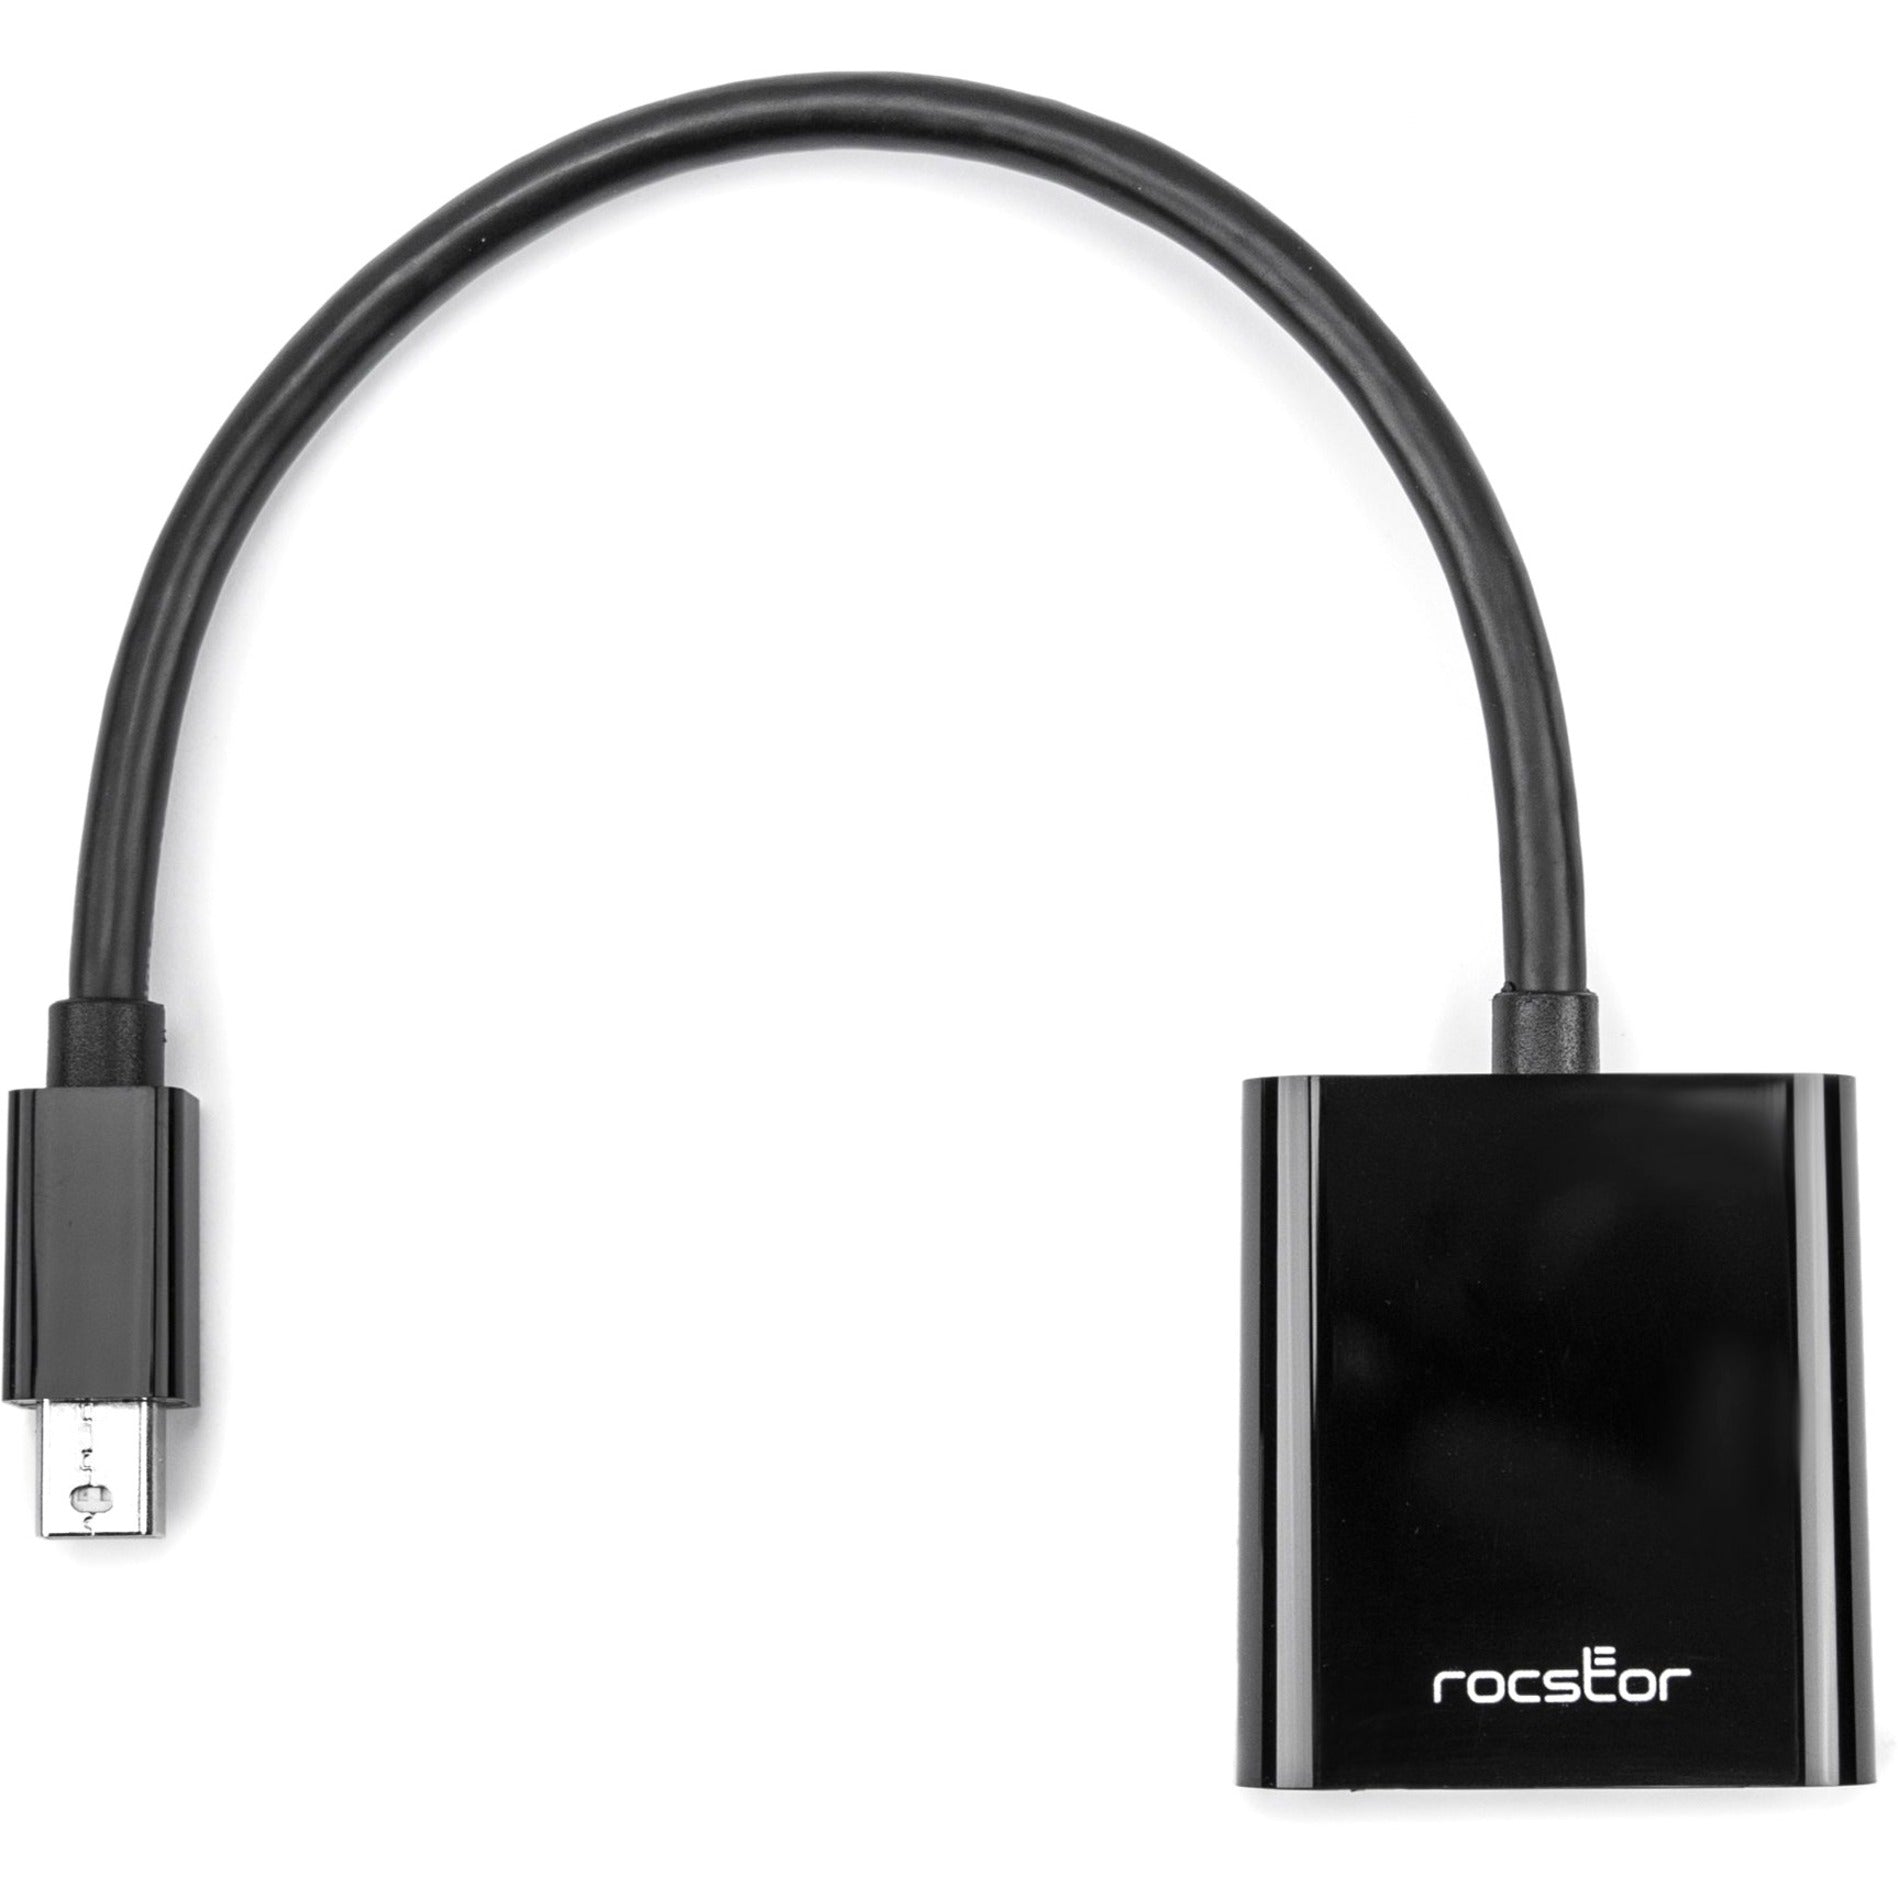 Rocstor Y10A199-B1 Premium Mini DisplayPort a adattatore video VGA cavo da 6" nero.